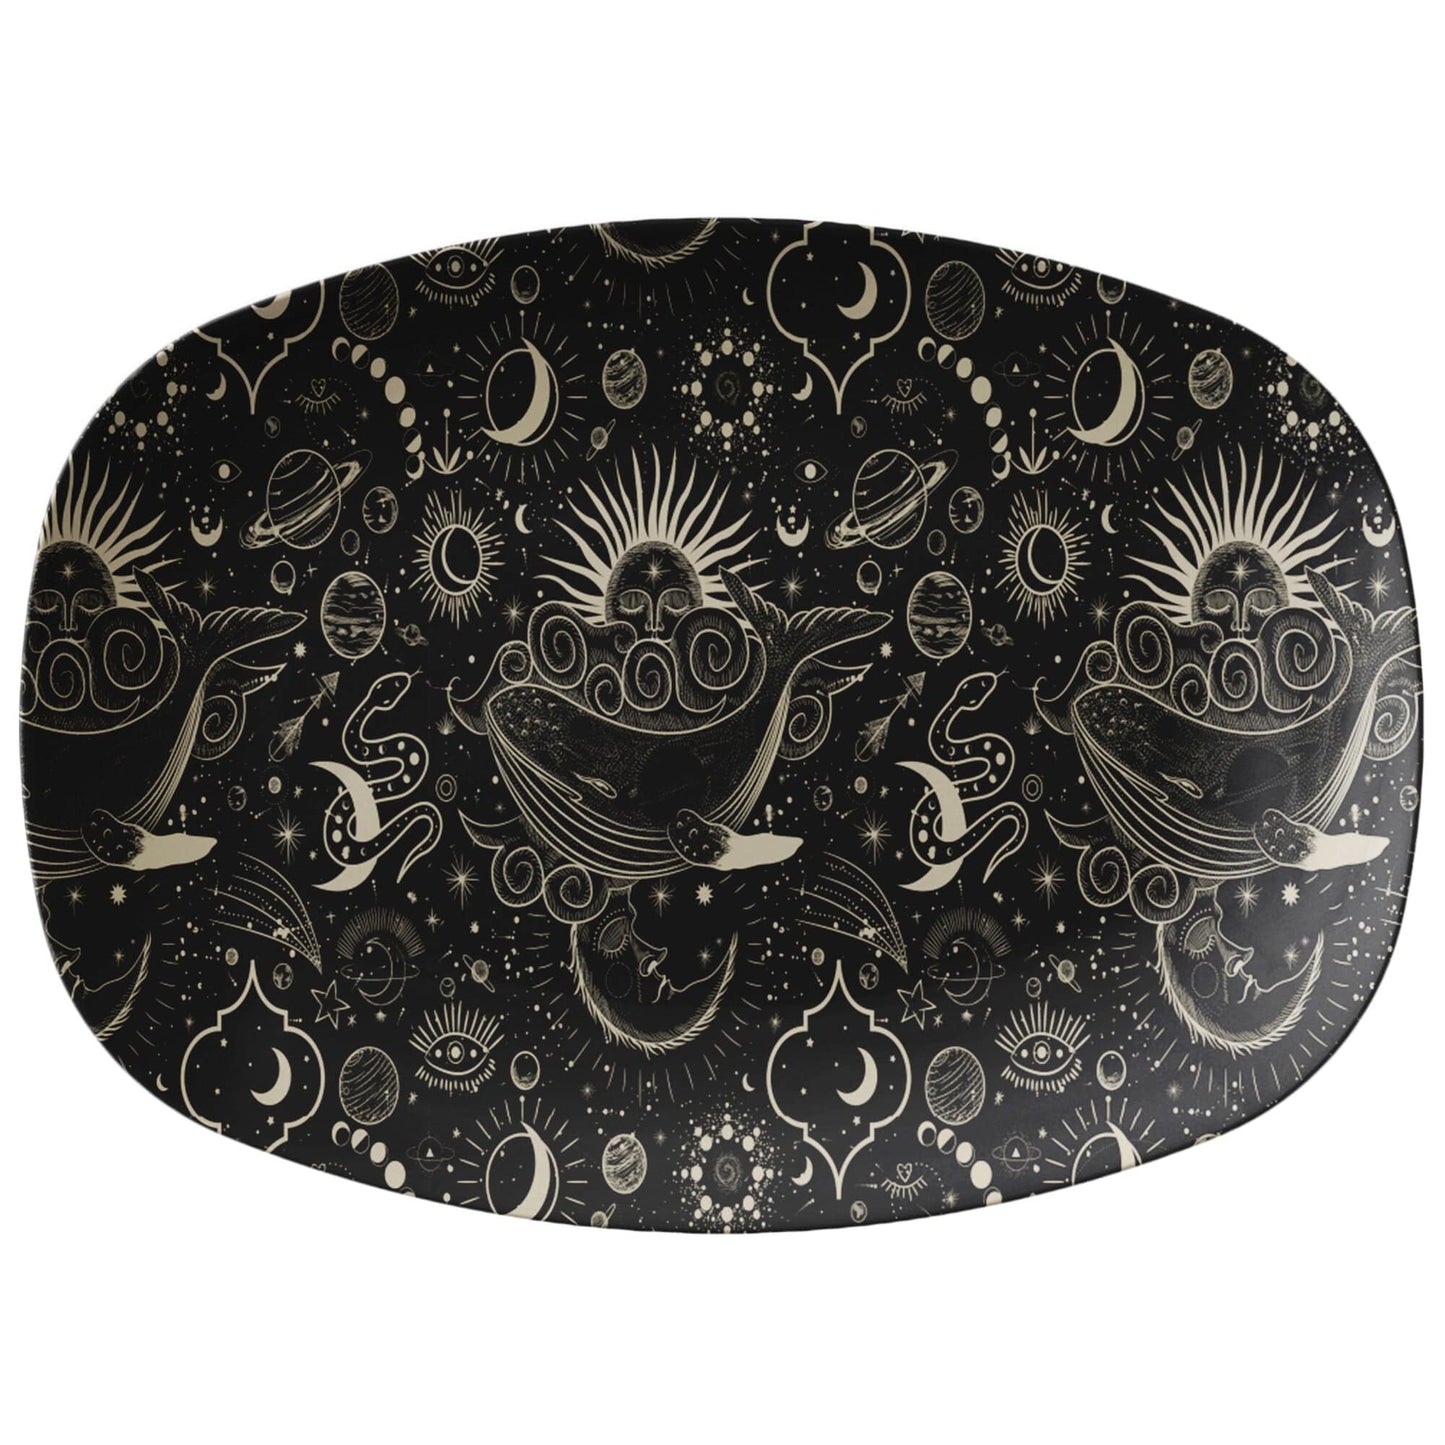 Kate McEnroe New York Vintage Celestial Moon Phases Platter Serving Platters 9727